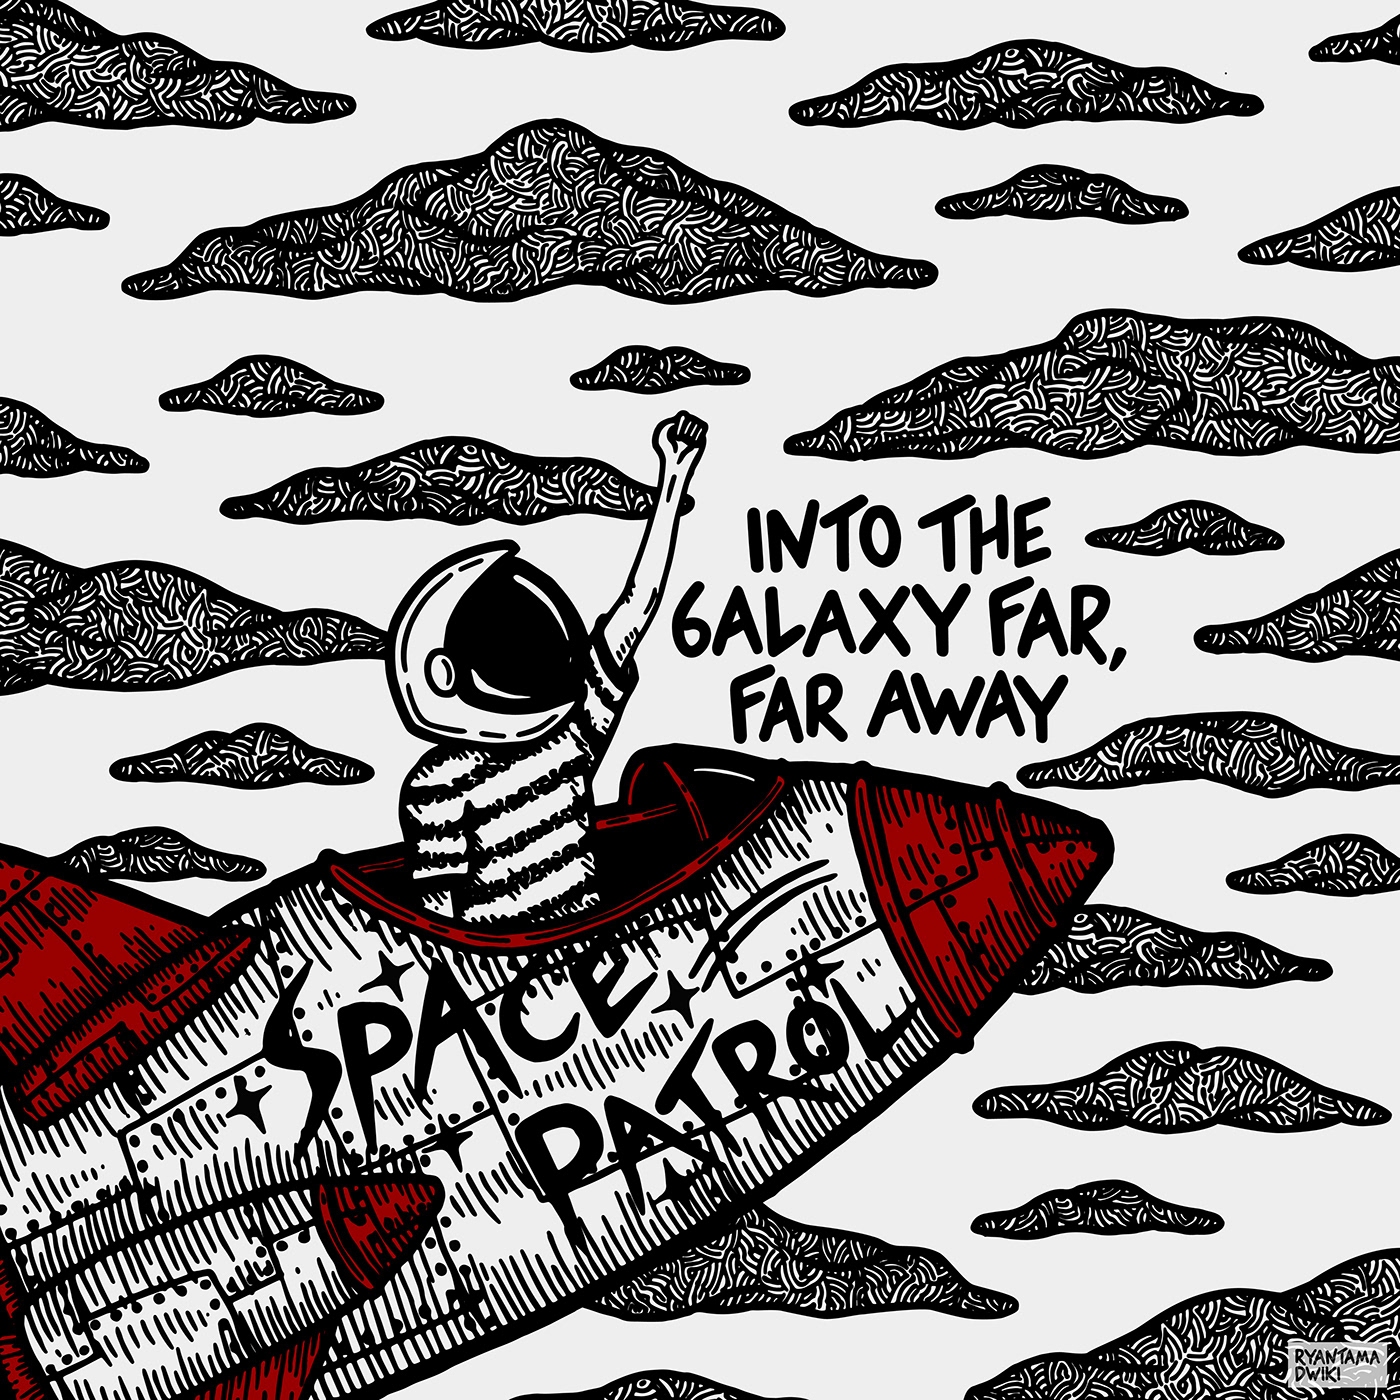 spaceship Space design cosmos cover design Cover Art album artwork astronaut rocket astronomy album cover